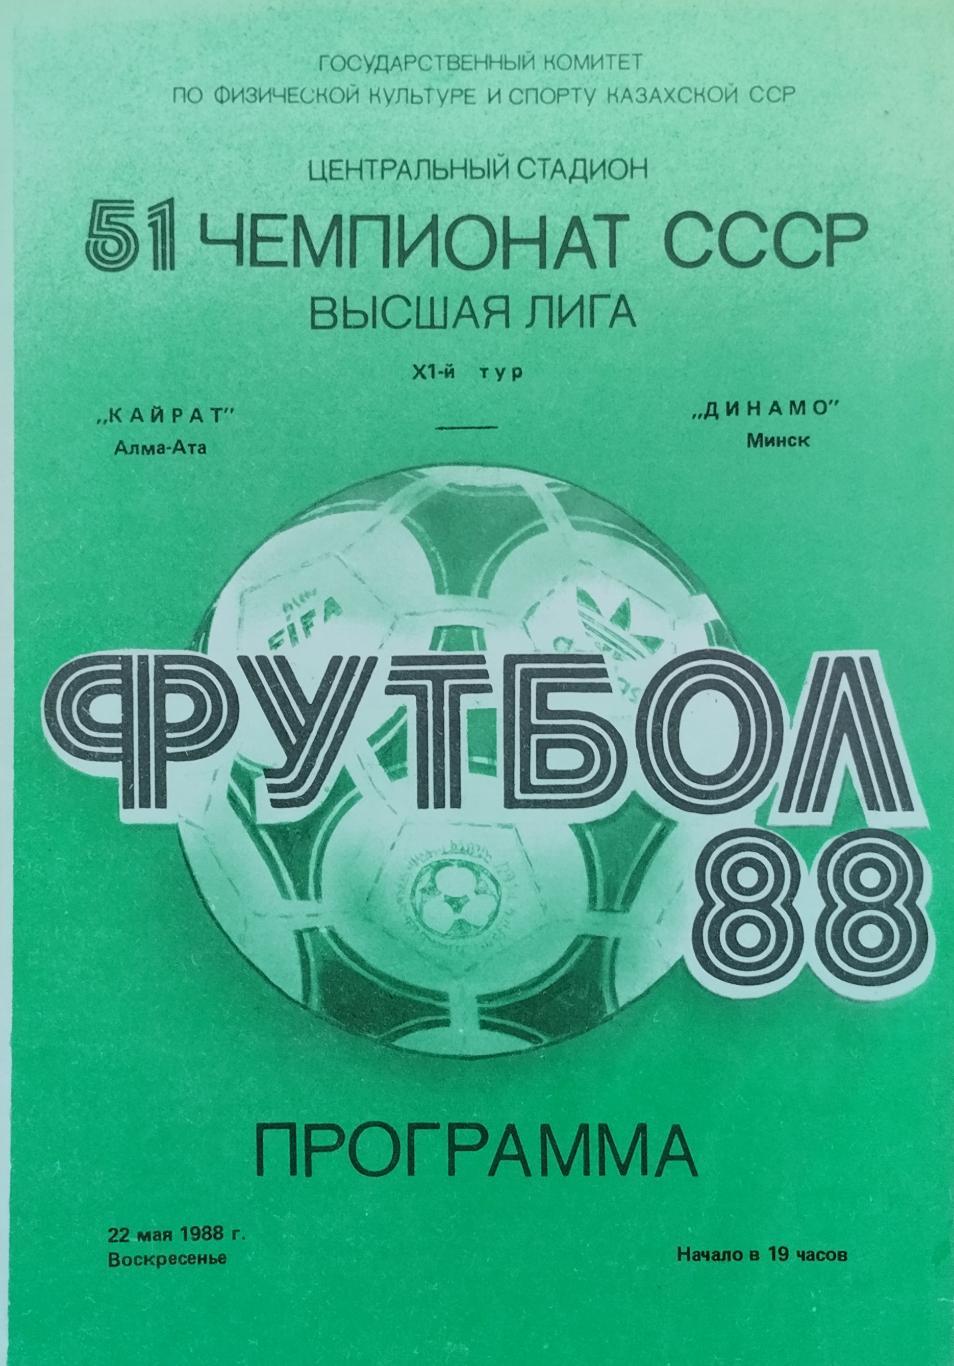 Кайрат Алма-Ата - Динамо Минск - 22.05.1988.